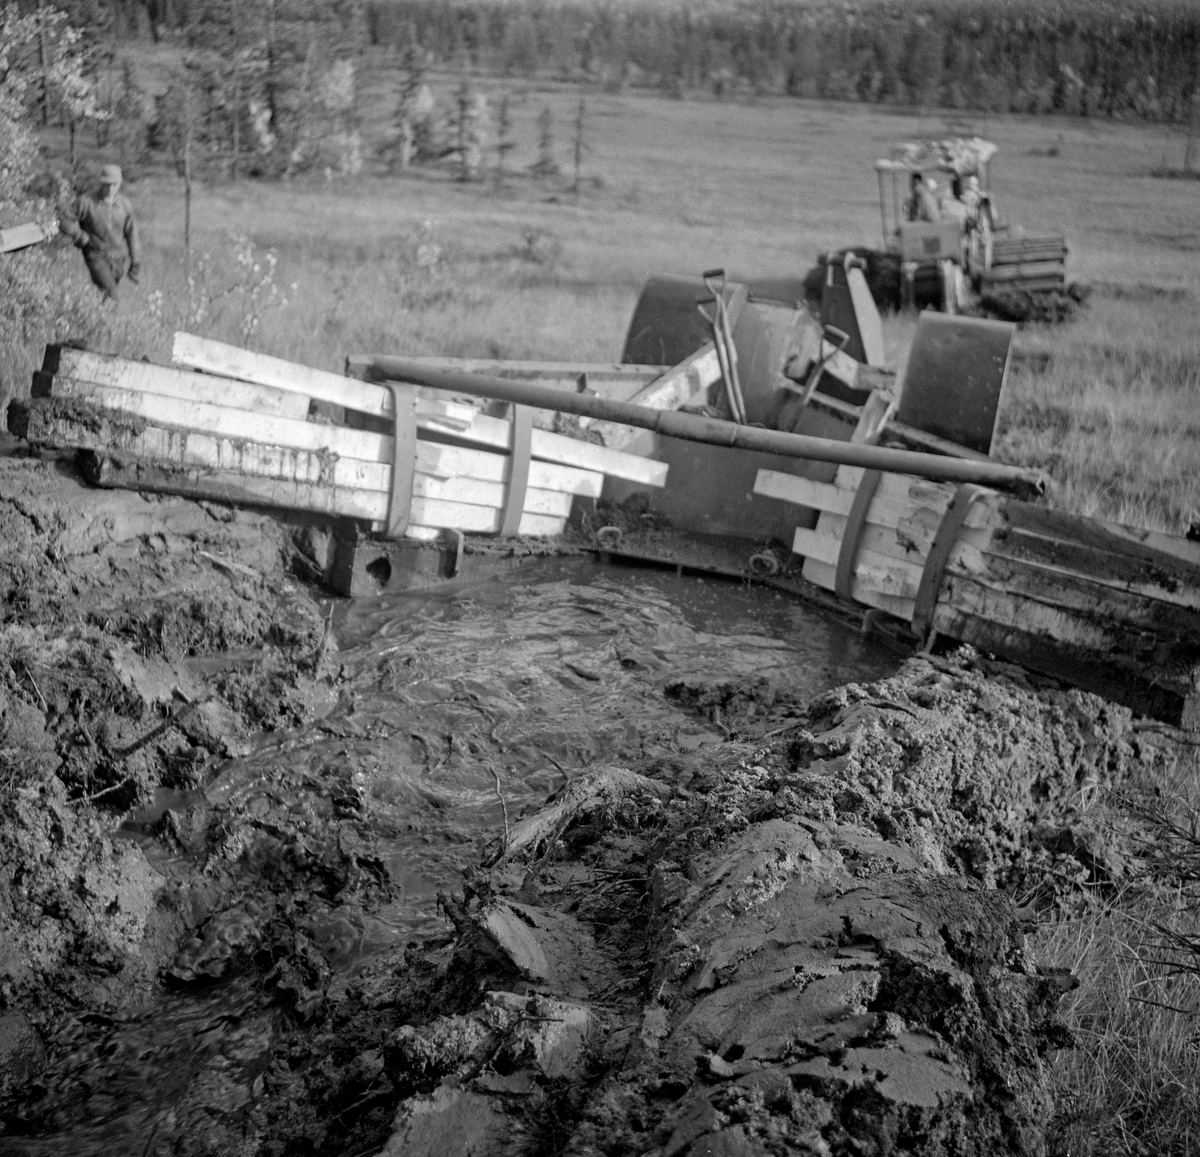 Såkalt «Lokomo-plog», fotografert bakfra under grøfteforsøk i Trysil høsten 1961.  Dette var en finskprodusert grøfteplog som veide hele 3,8 tonn.  Den ble trukket av en kraftig beltetraktor med bakmontert vinsj.  Lokomo-plogen etterlot seg ei renne i myra som var 70-90 centimeter djup, cirka 30 centimeter bred i botnen og en drøy meter bred i marksjiktet.  De oppløyde torvmassene skjøv plogen godt til side for grøftekantene.  Hvor langt vekk torva skulle skyves kunne justeres ved hjelp av plankestubber som ble tredd inn bak vertikale stålband på baksida av veltefjølene.  Da dette fotografiet ble tatt ble plogen kjørt på ei skrånende myr, med hellingsretningen.  Fotografiet viser også hvordan vannet fulgte plogen når den ble kjørt «unnabakke».  Mer informasjon om Lokomo-plogen finnes under fanen «Opplysninger».